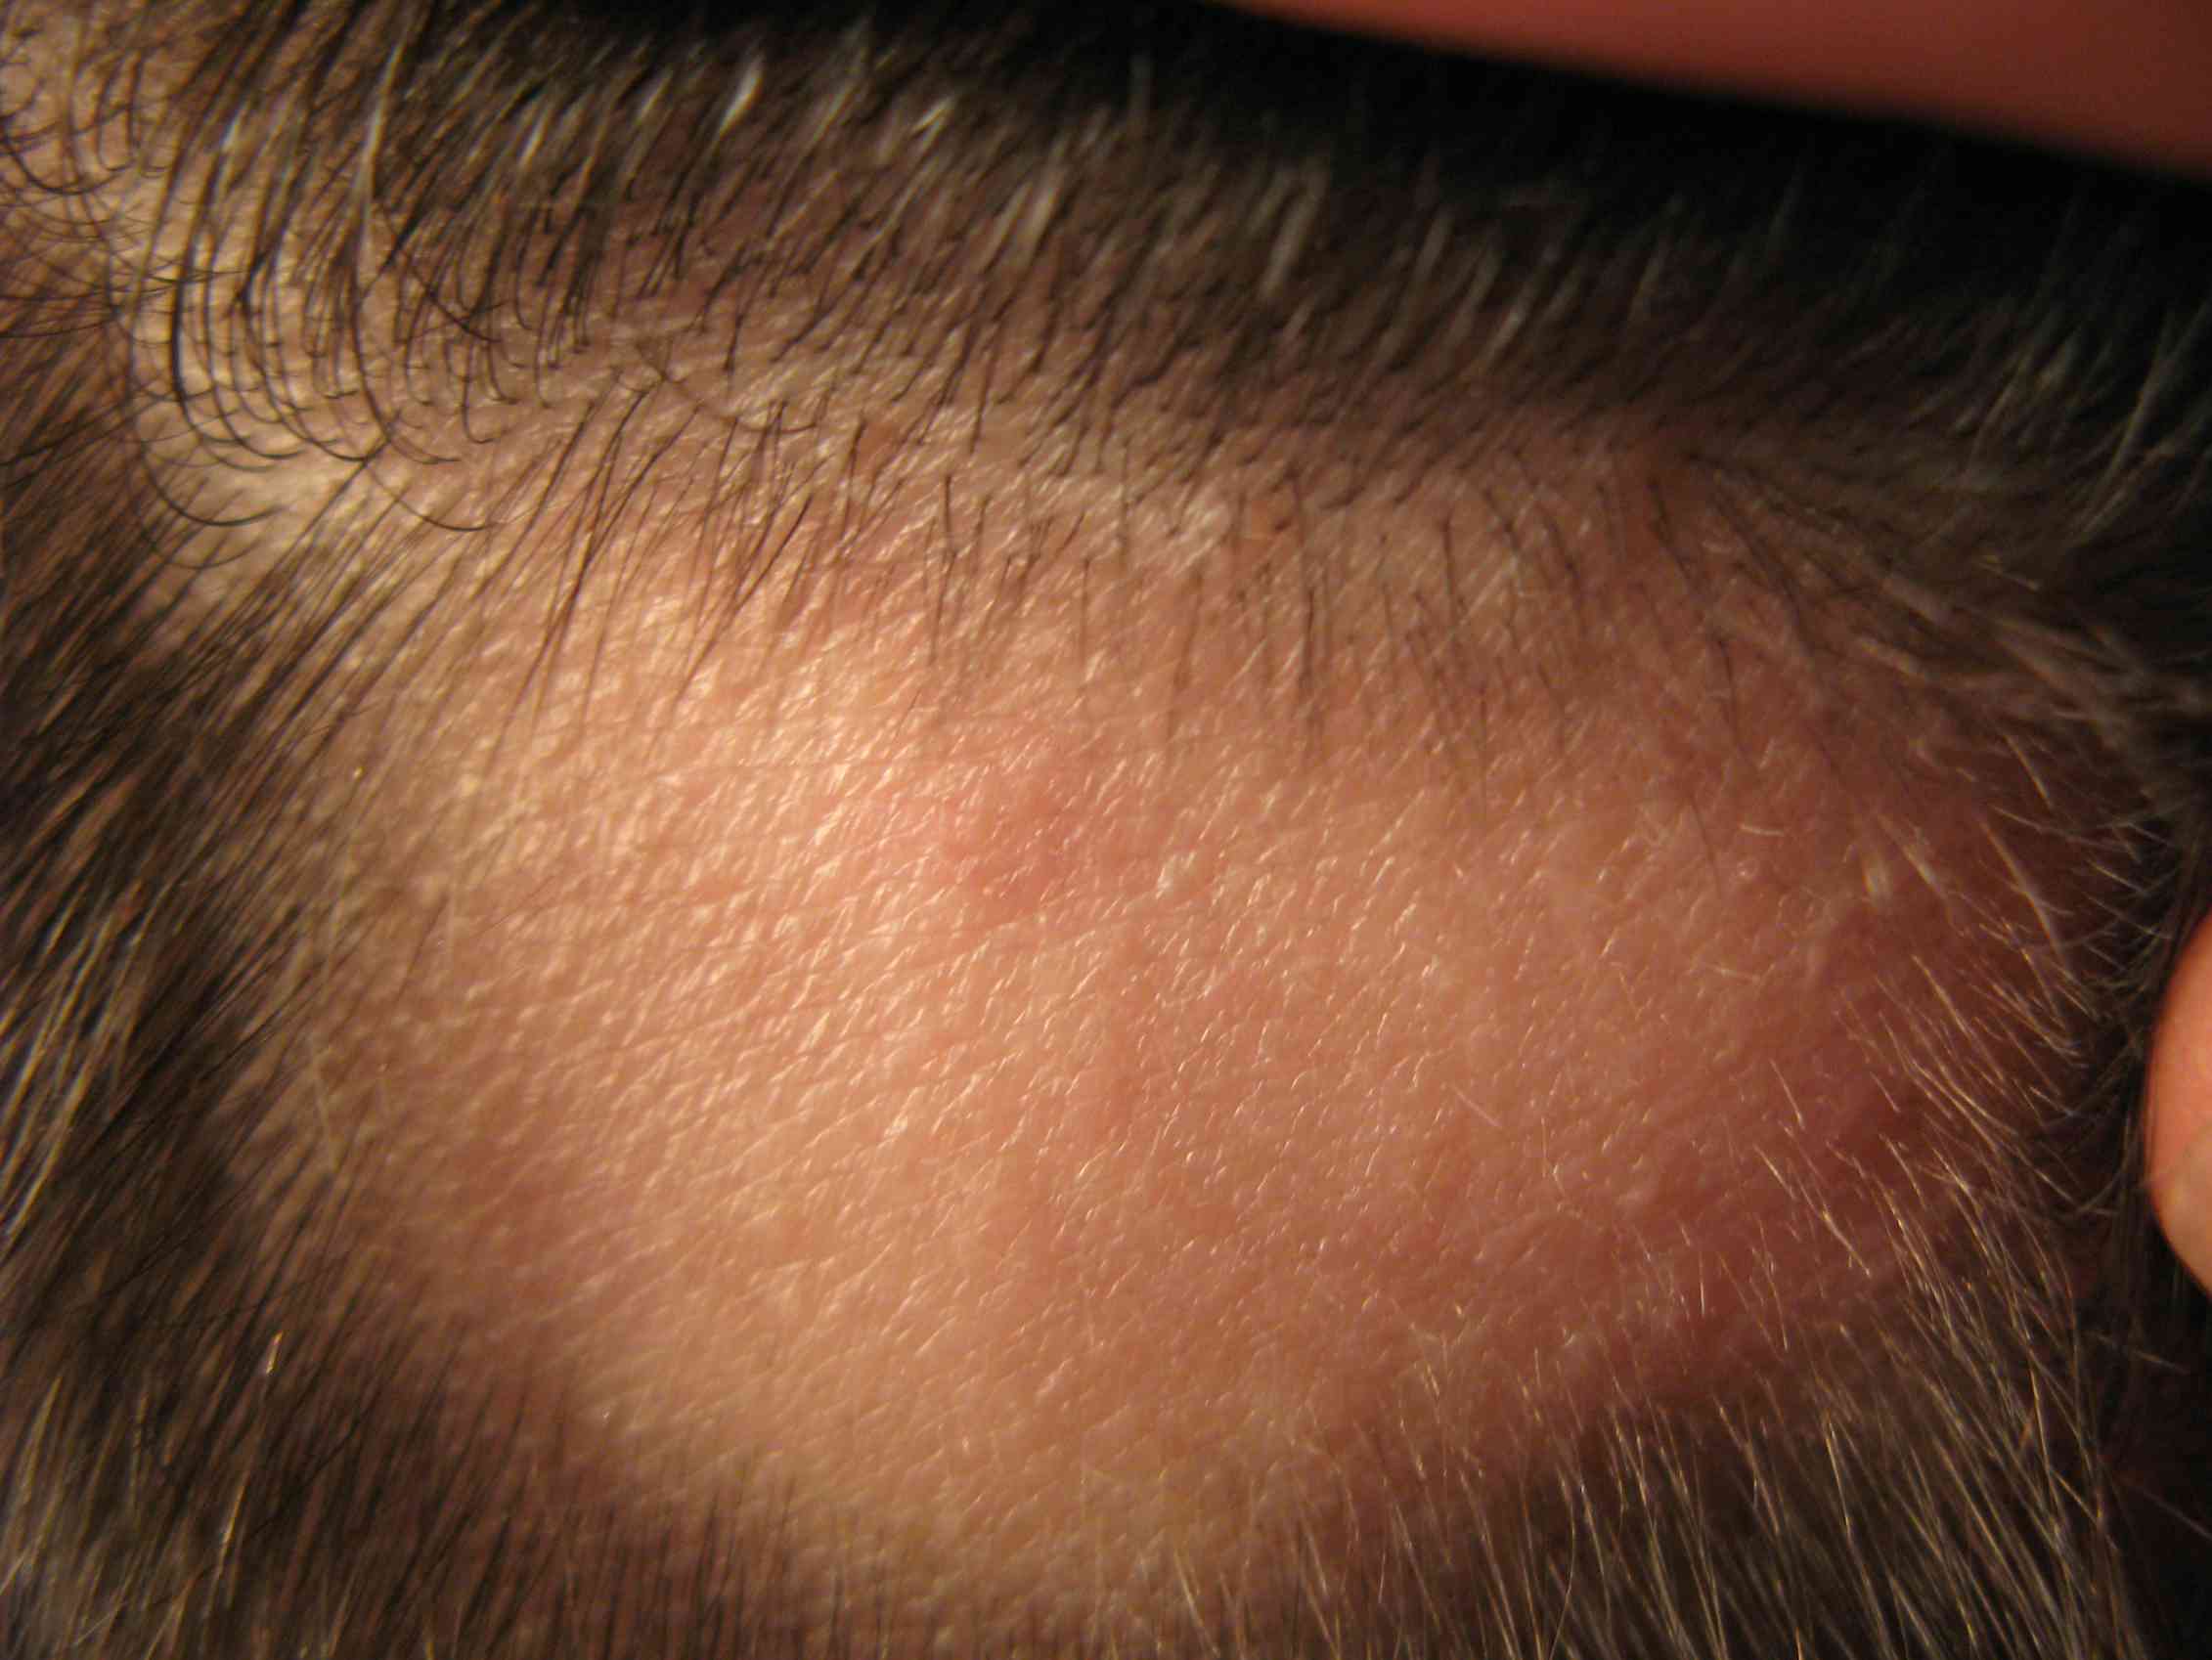 Красный лоб у мужчины. Фолликулит, гипертрихоз. Очаговая алопеция (alopecia Areata). Трихофития (стригущий лишай).